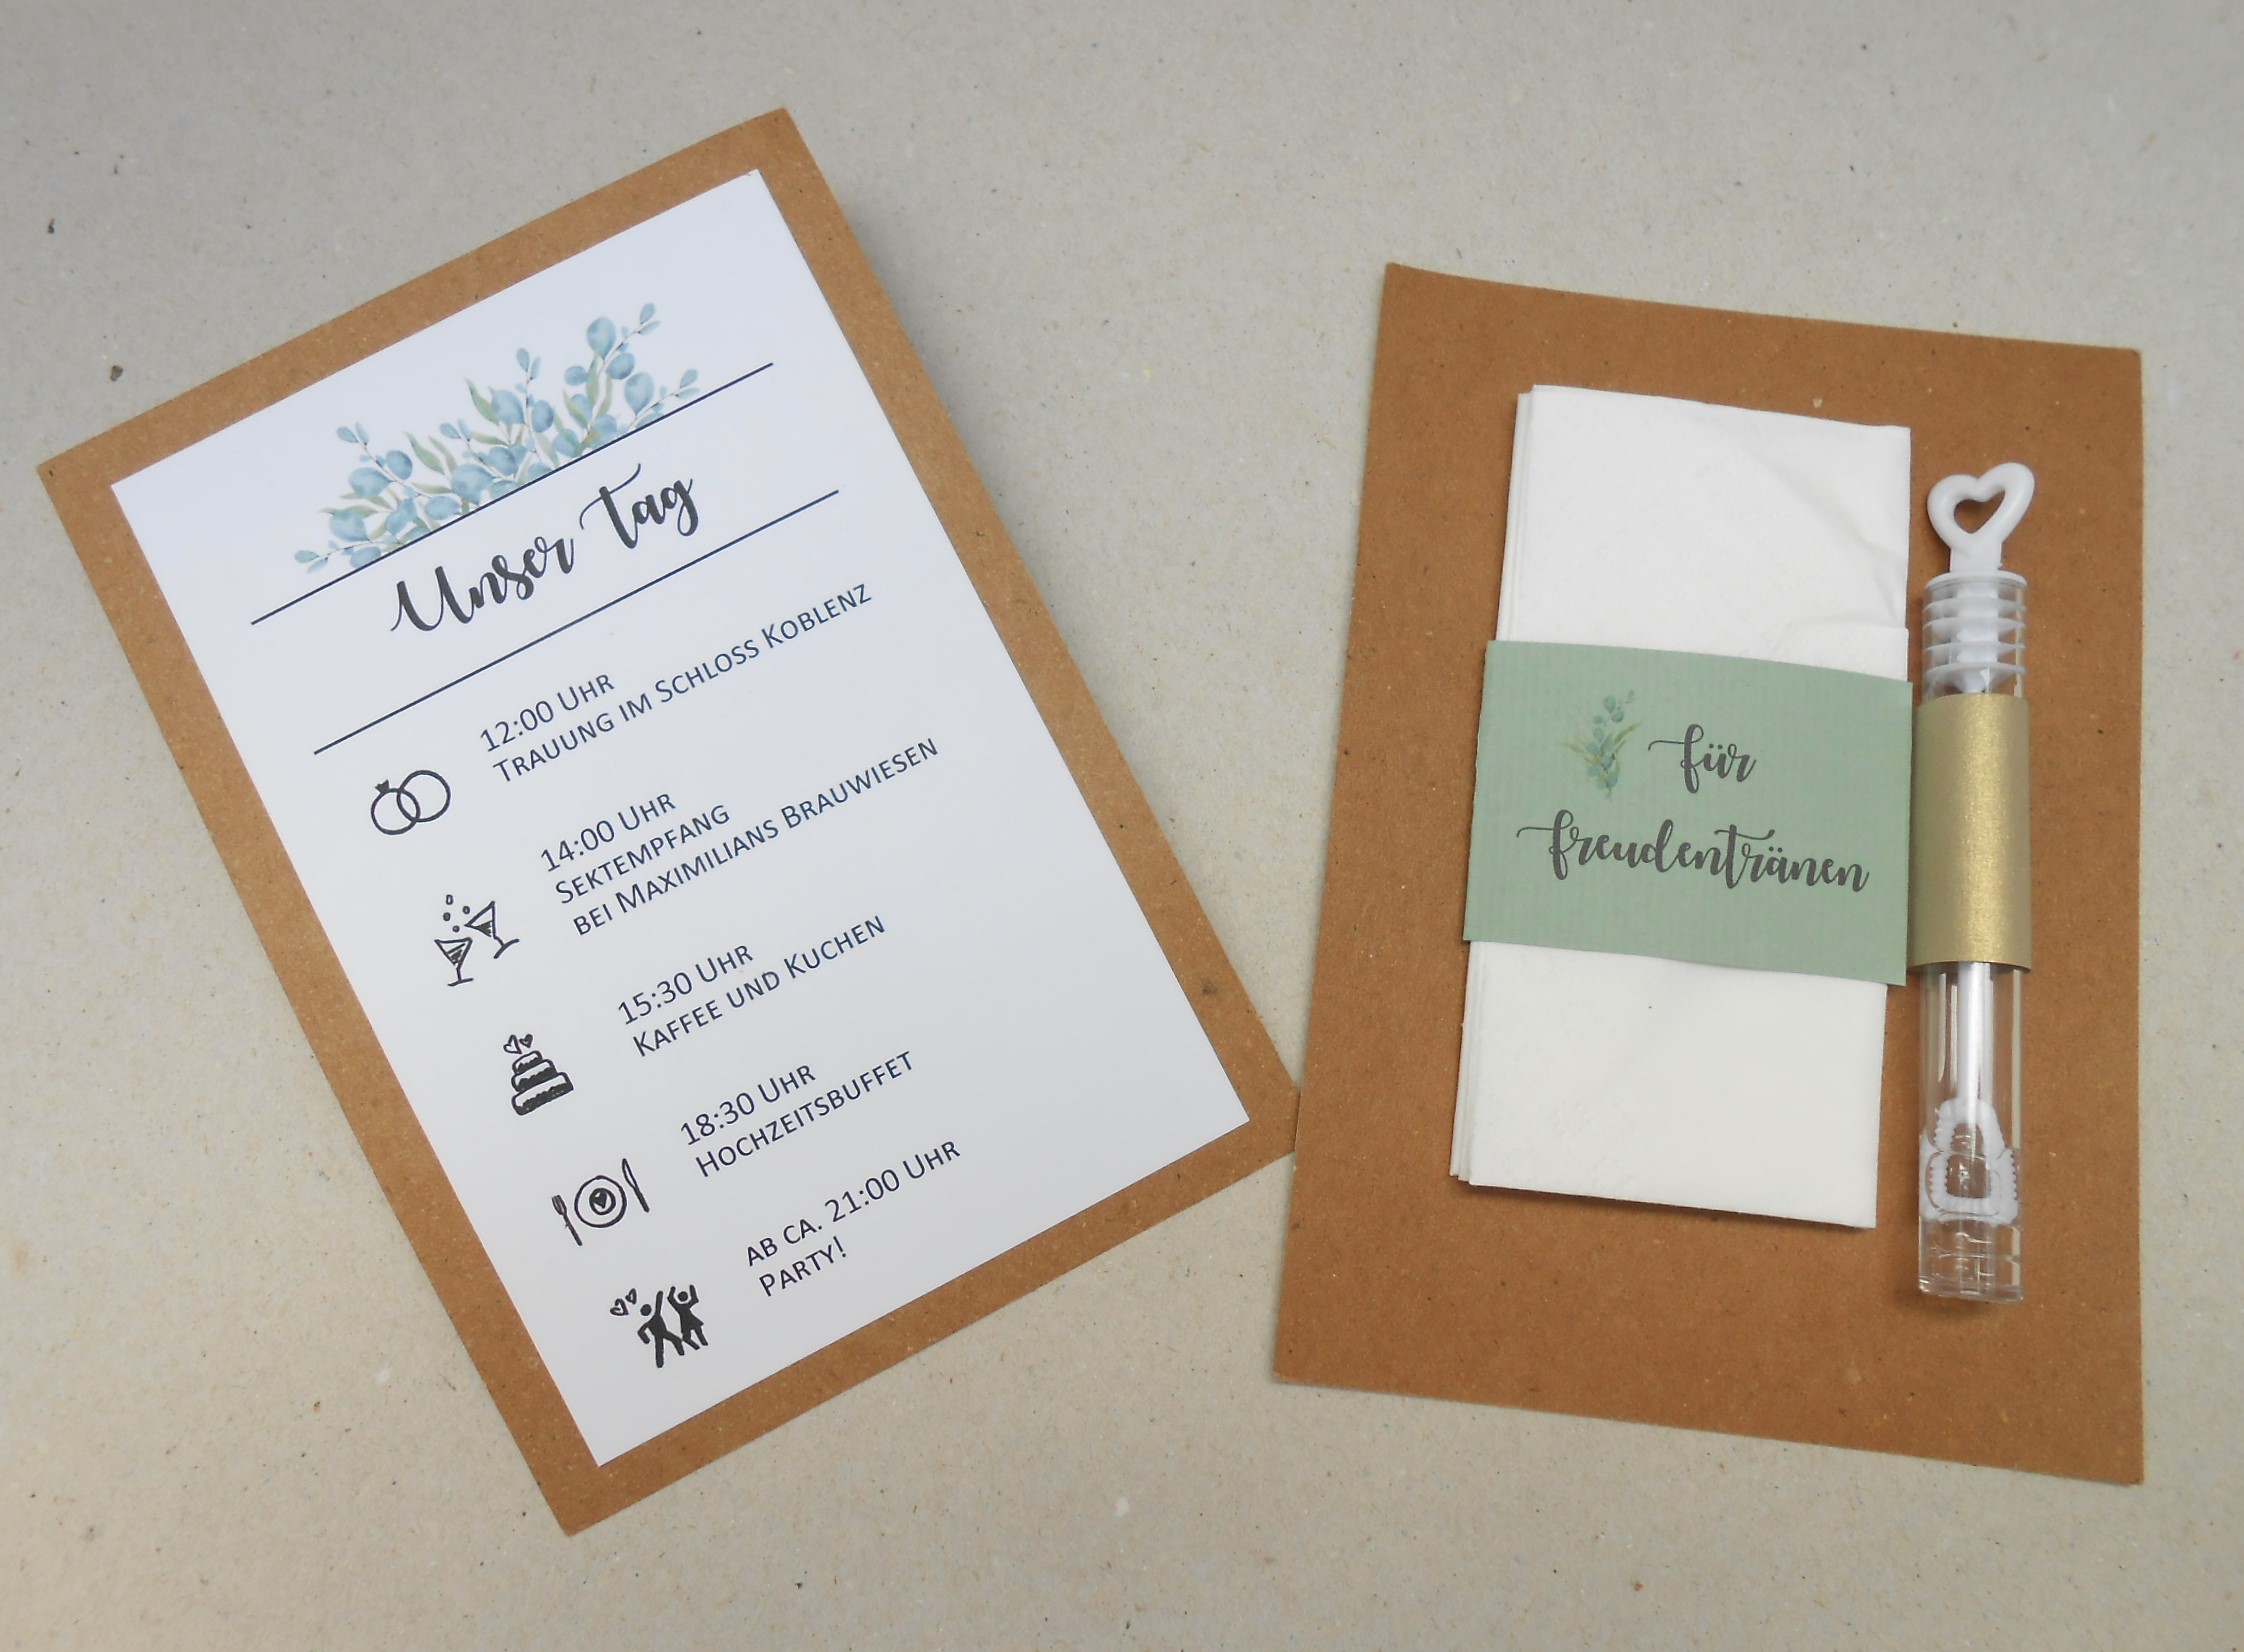 Timeline oder Ablaufplan für die Hochzeit auf Kraftpapier, Rückseite mit Taschentuch für Freudentränen und Seifenblasen